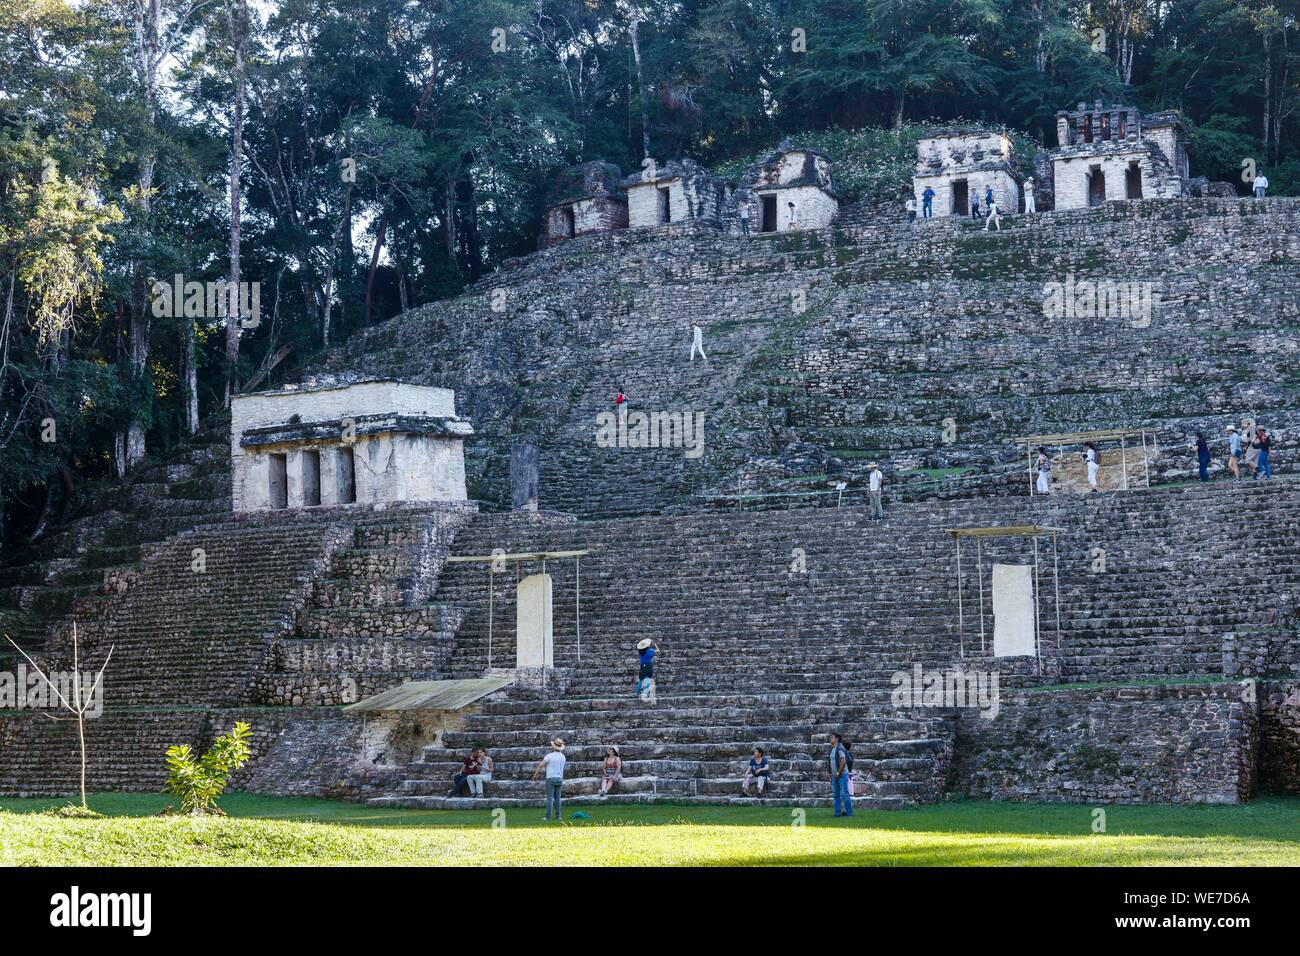 Le Mexique, l'état du Chiapas, Bonampak, site archéologique maya, acropole escaliers Banque D'Images